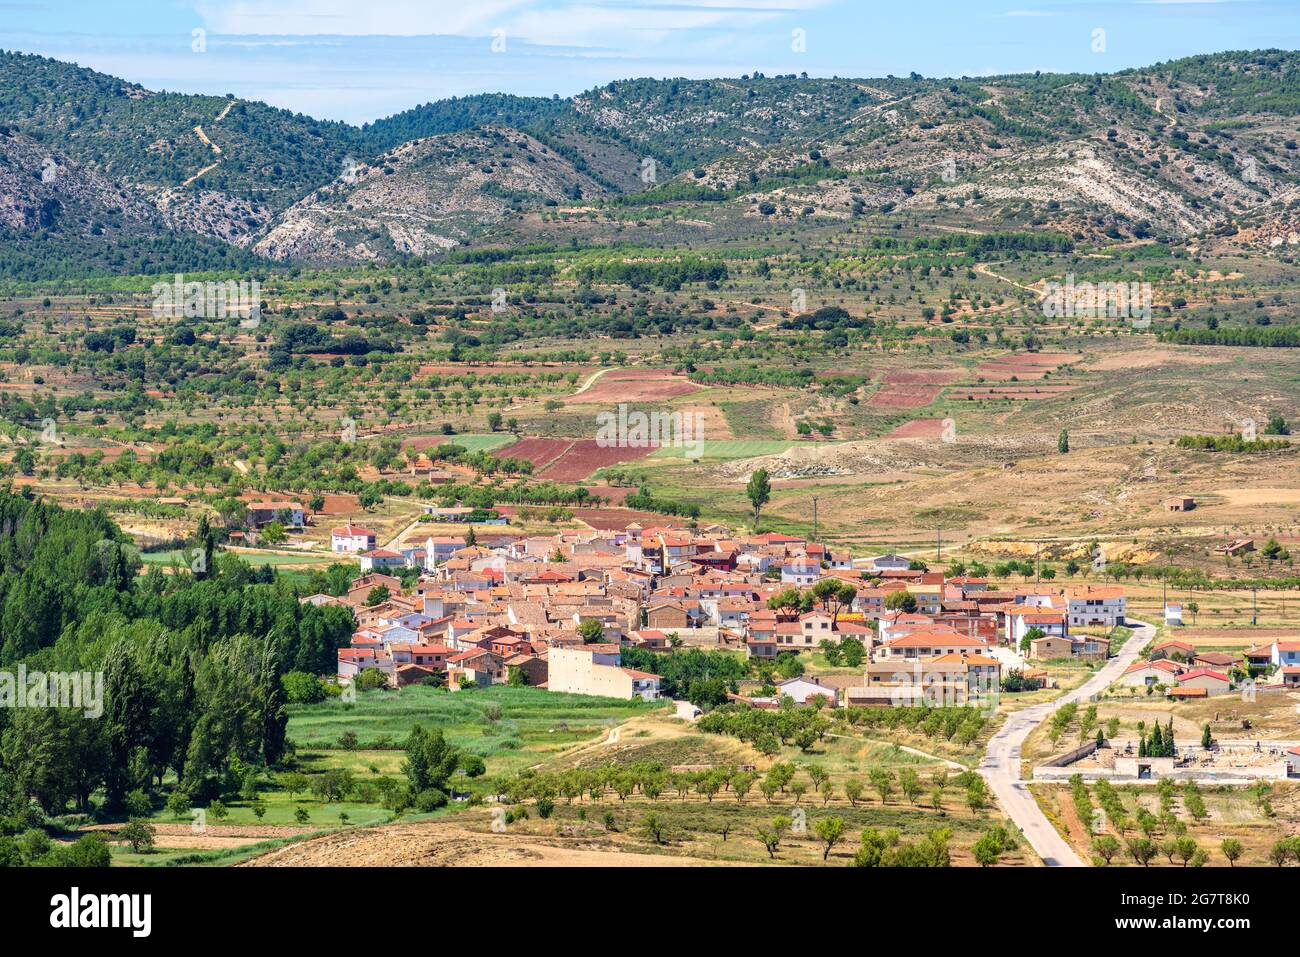 High angle view of a town in nature landscape. Santo Domingo de Moya, Cuenca, Castilla-La Mancha, Spain Stock Photo